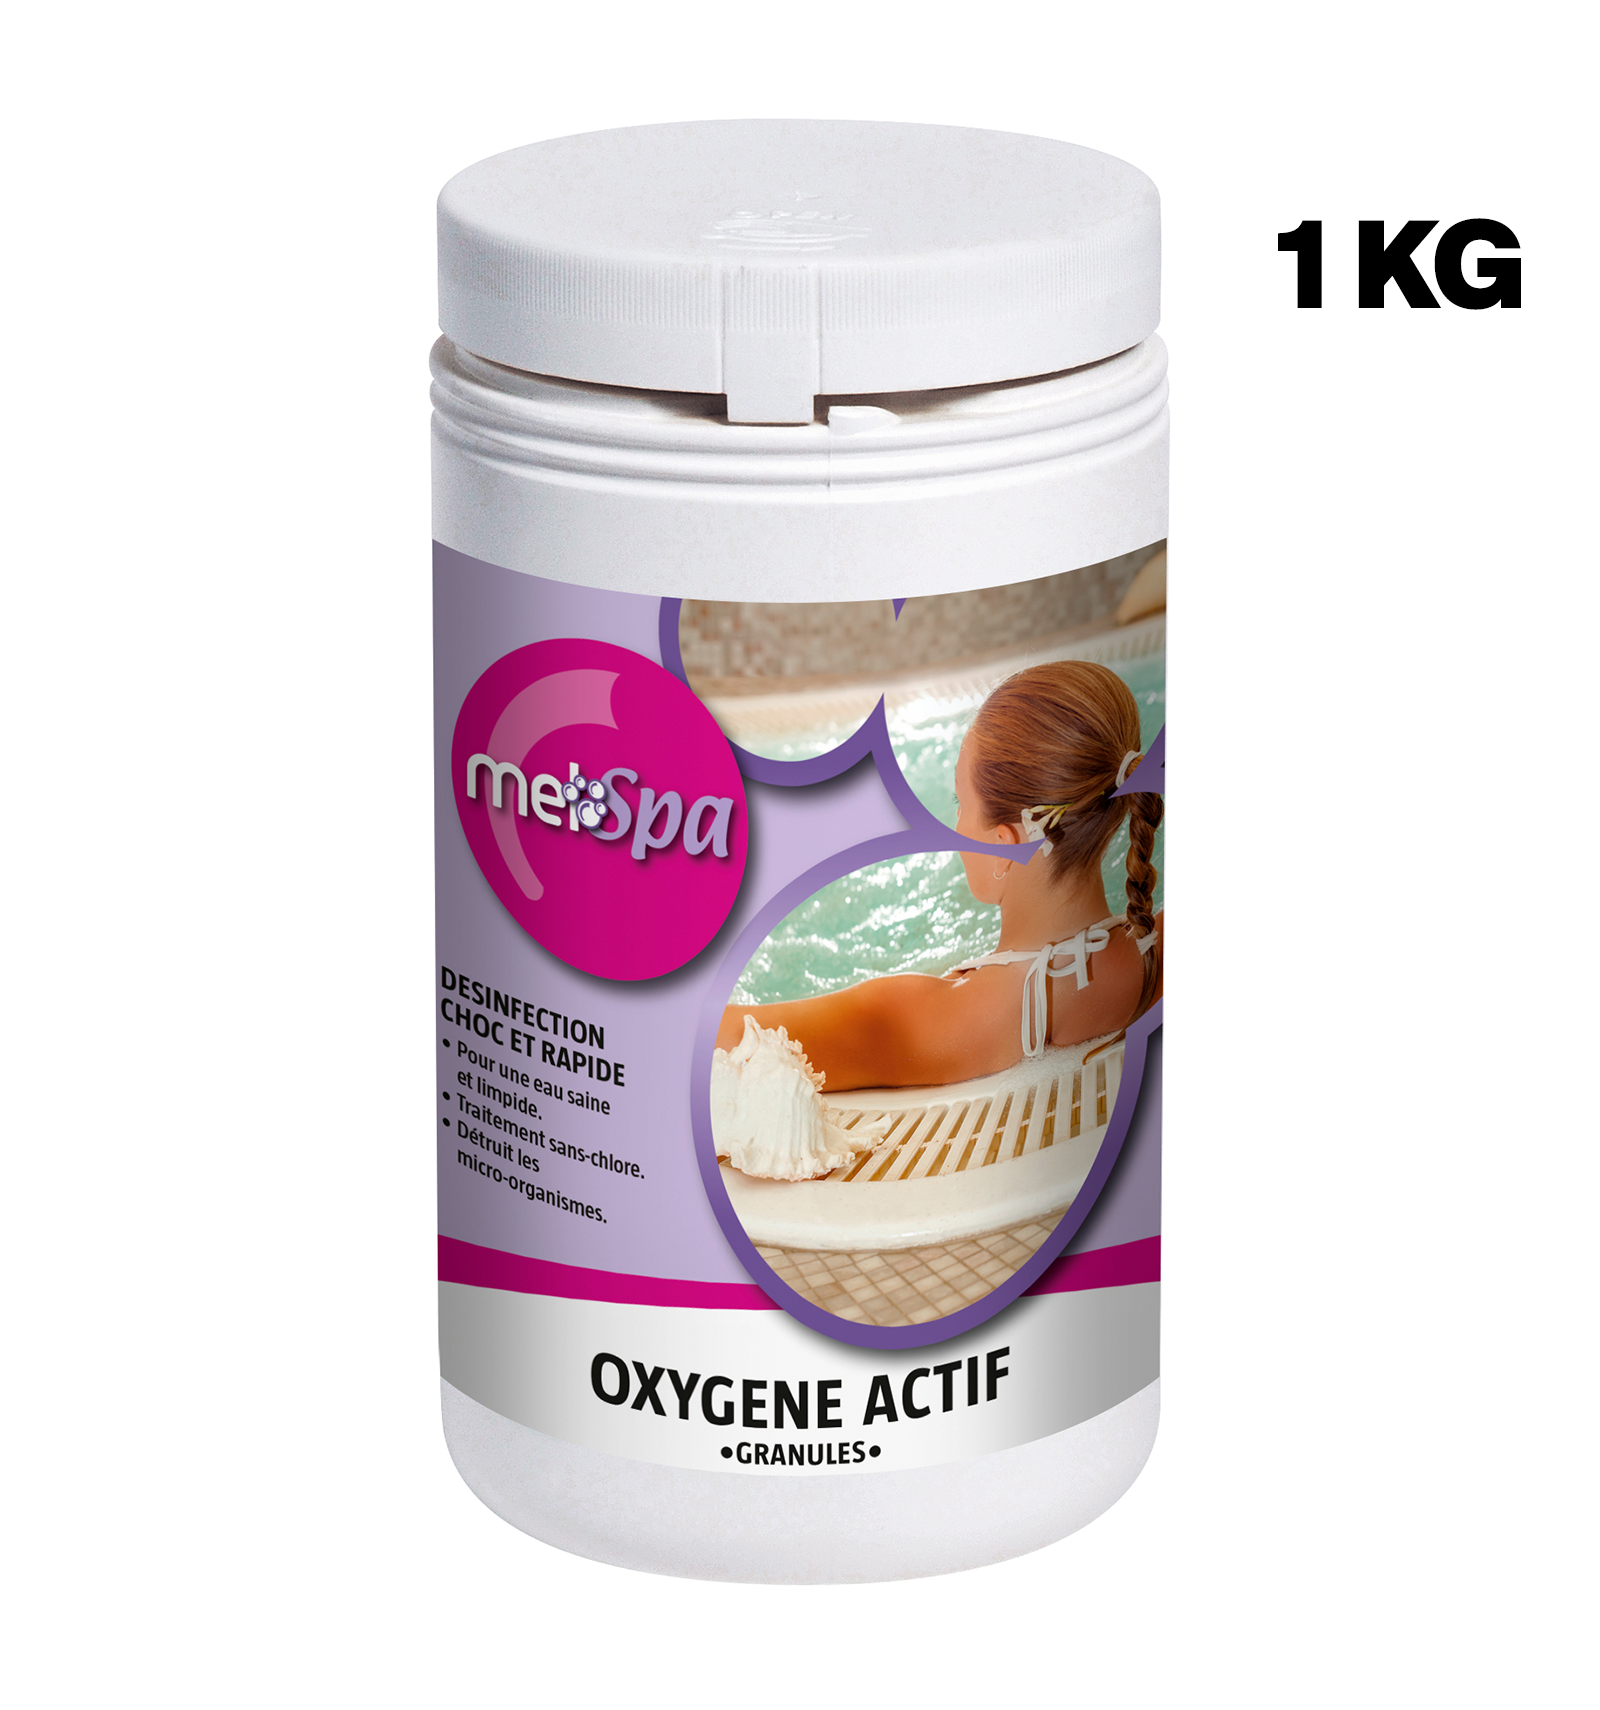 Traitement choc - Oxygène actif - Pastilles 20gr - Boite de 1kg - Edg